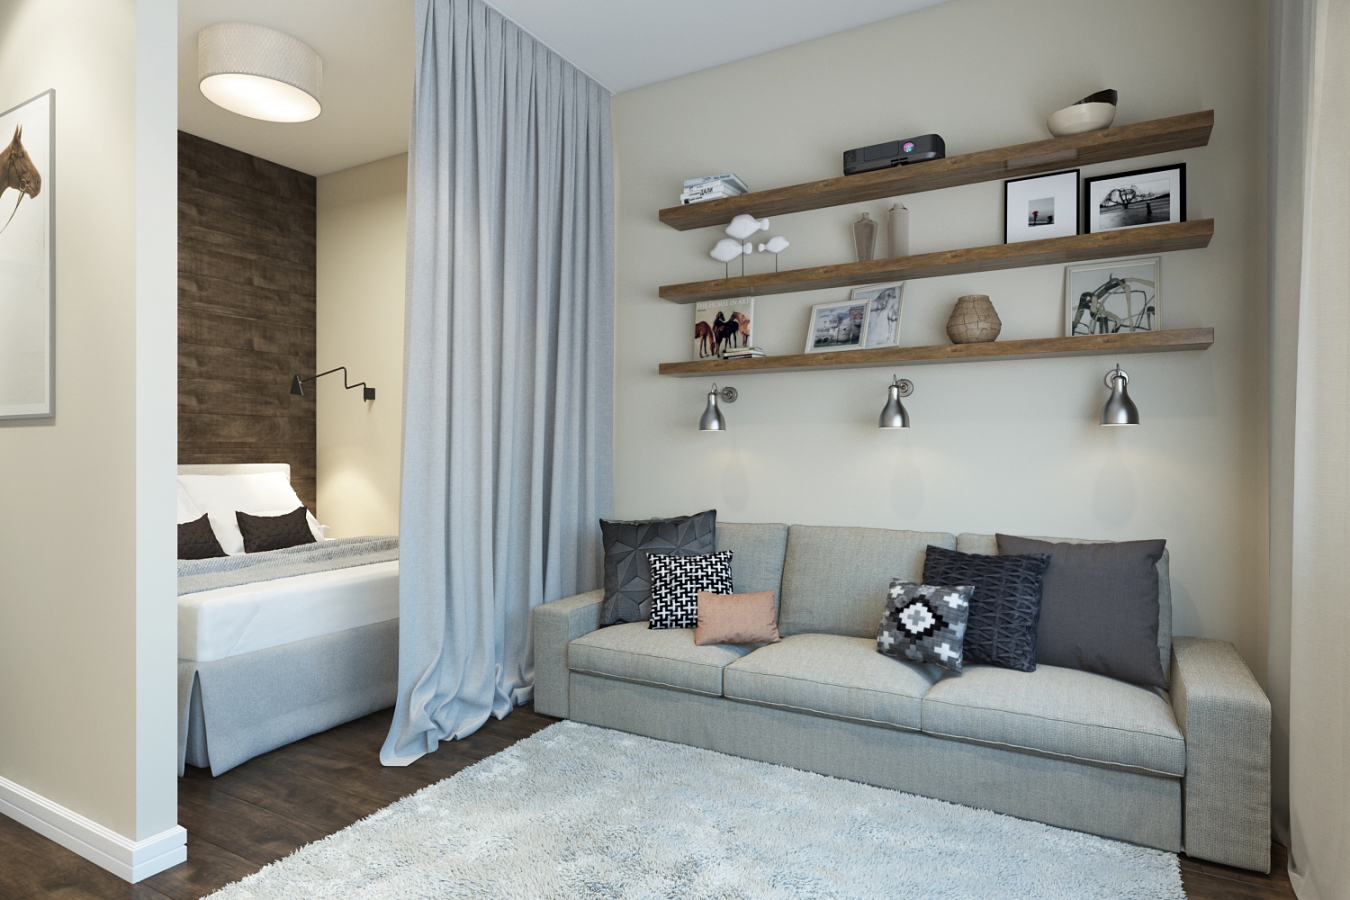 кровать или диван в двухкомнатной квартире